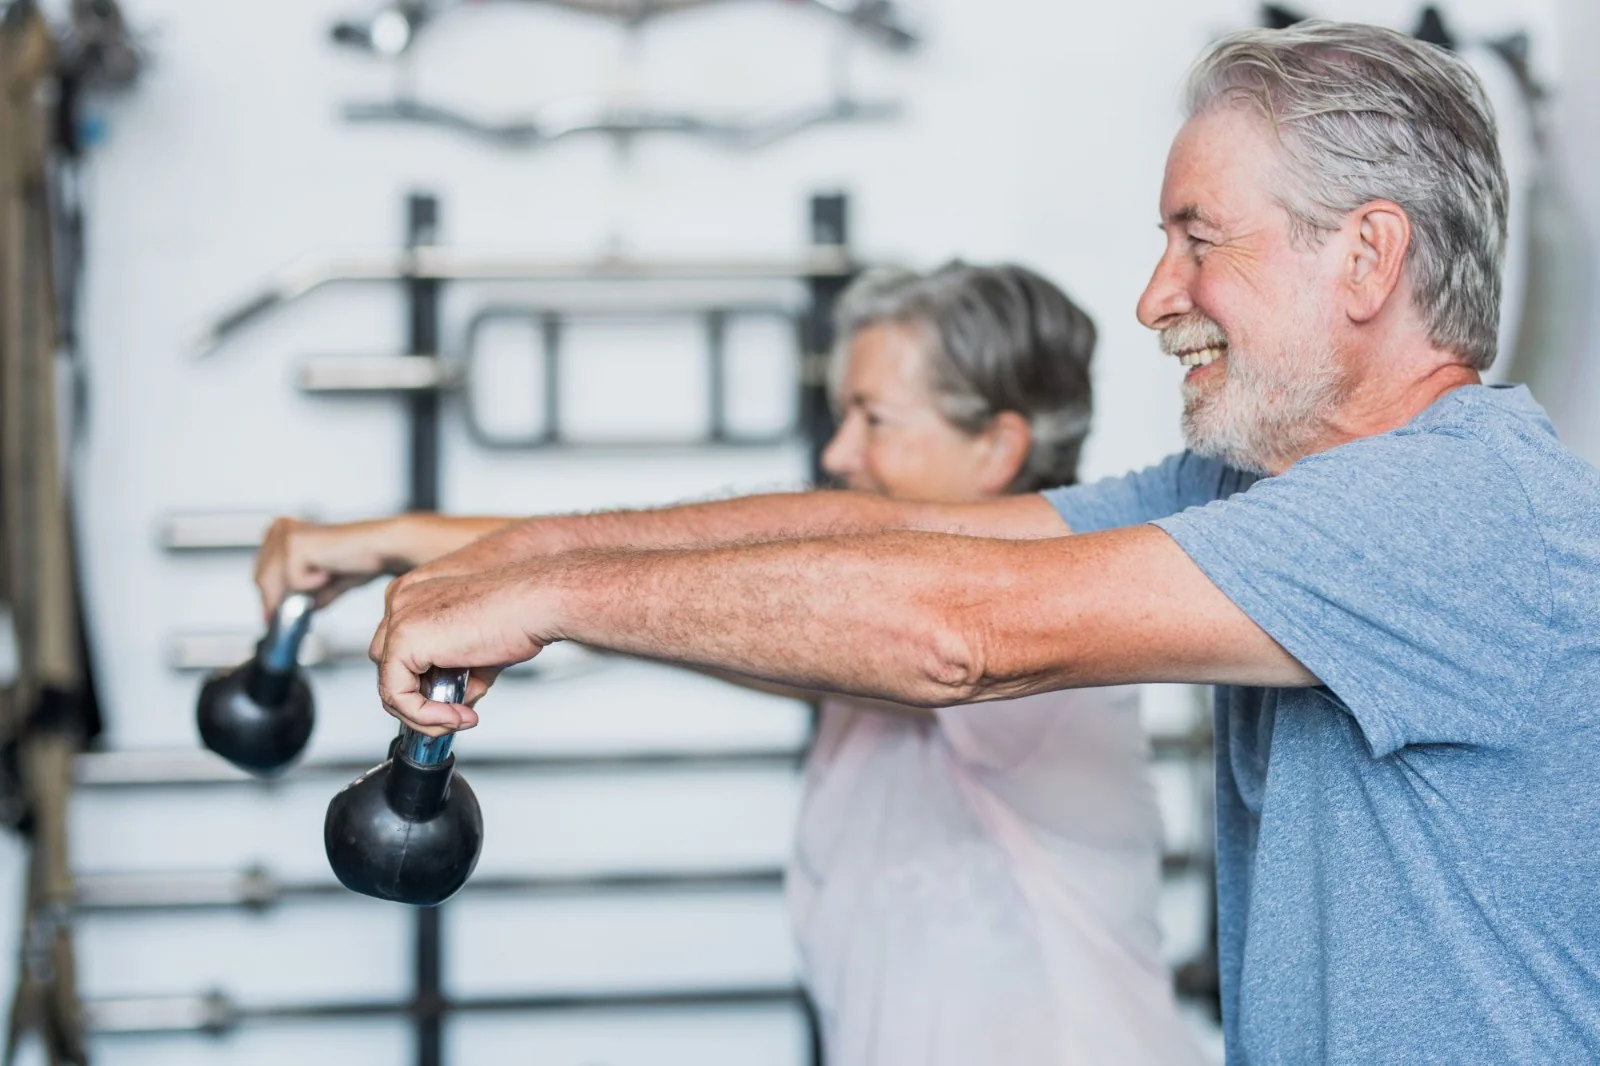 Musculação melhora sintomas de depressão e ansiedade em idosos, aponta estudo